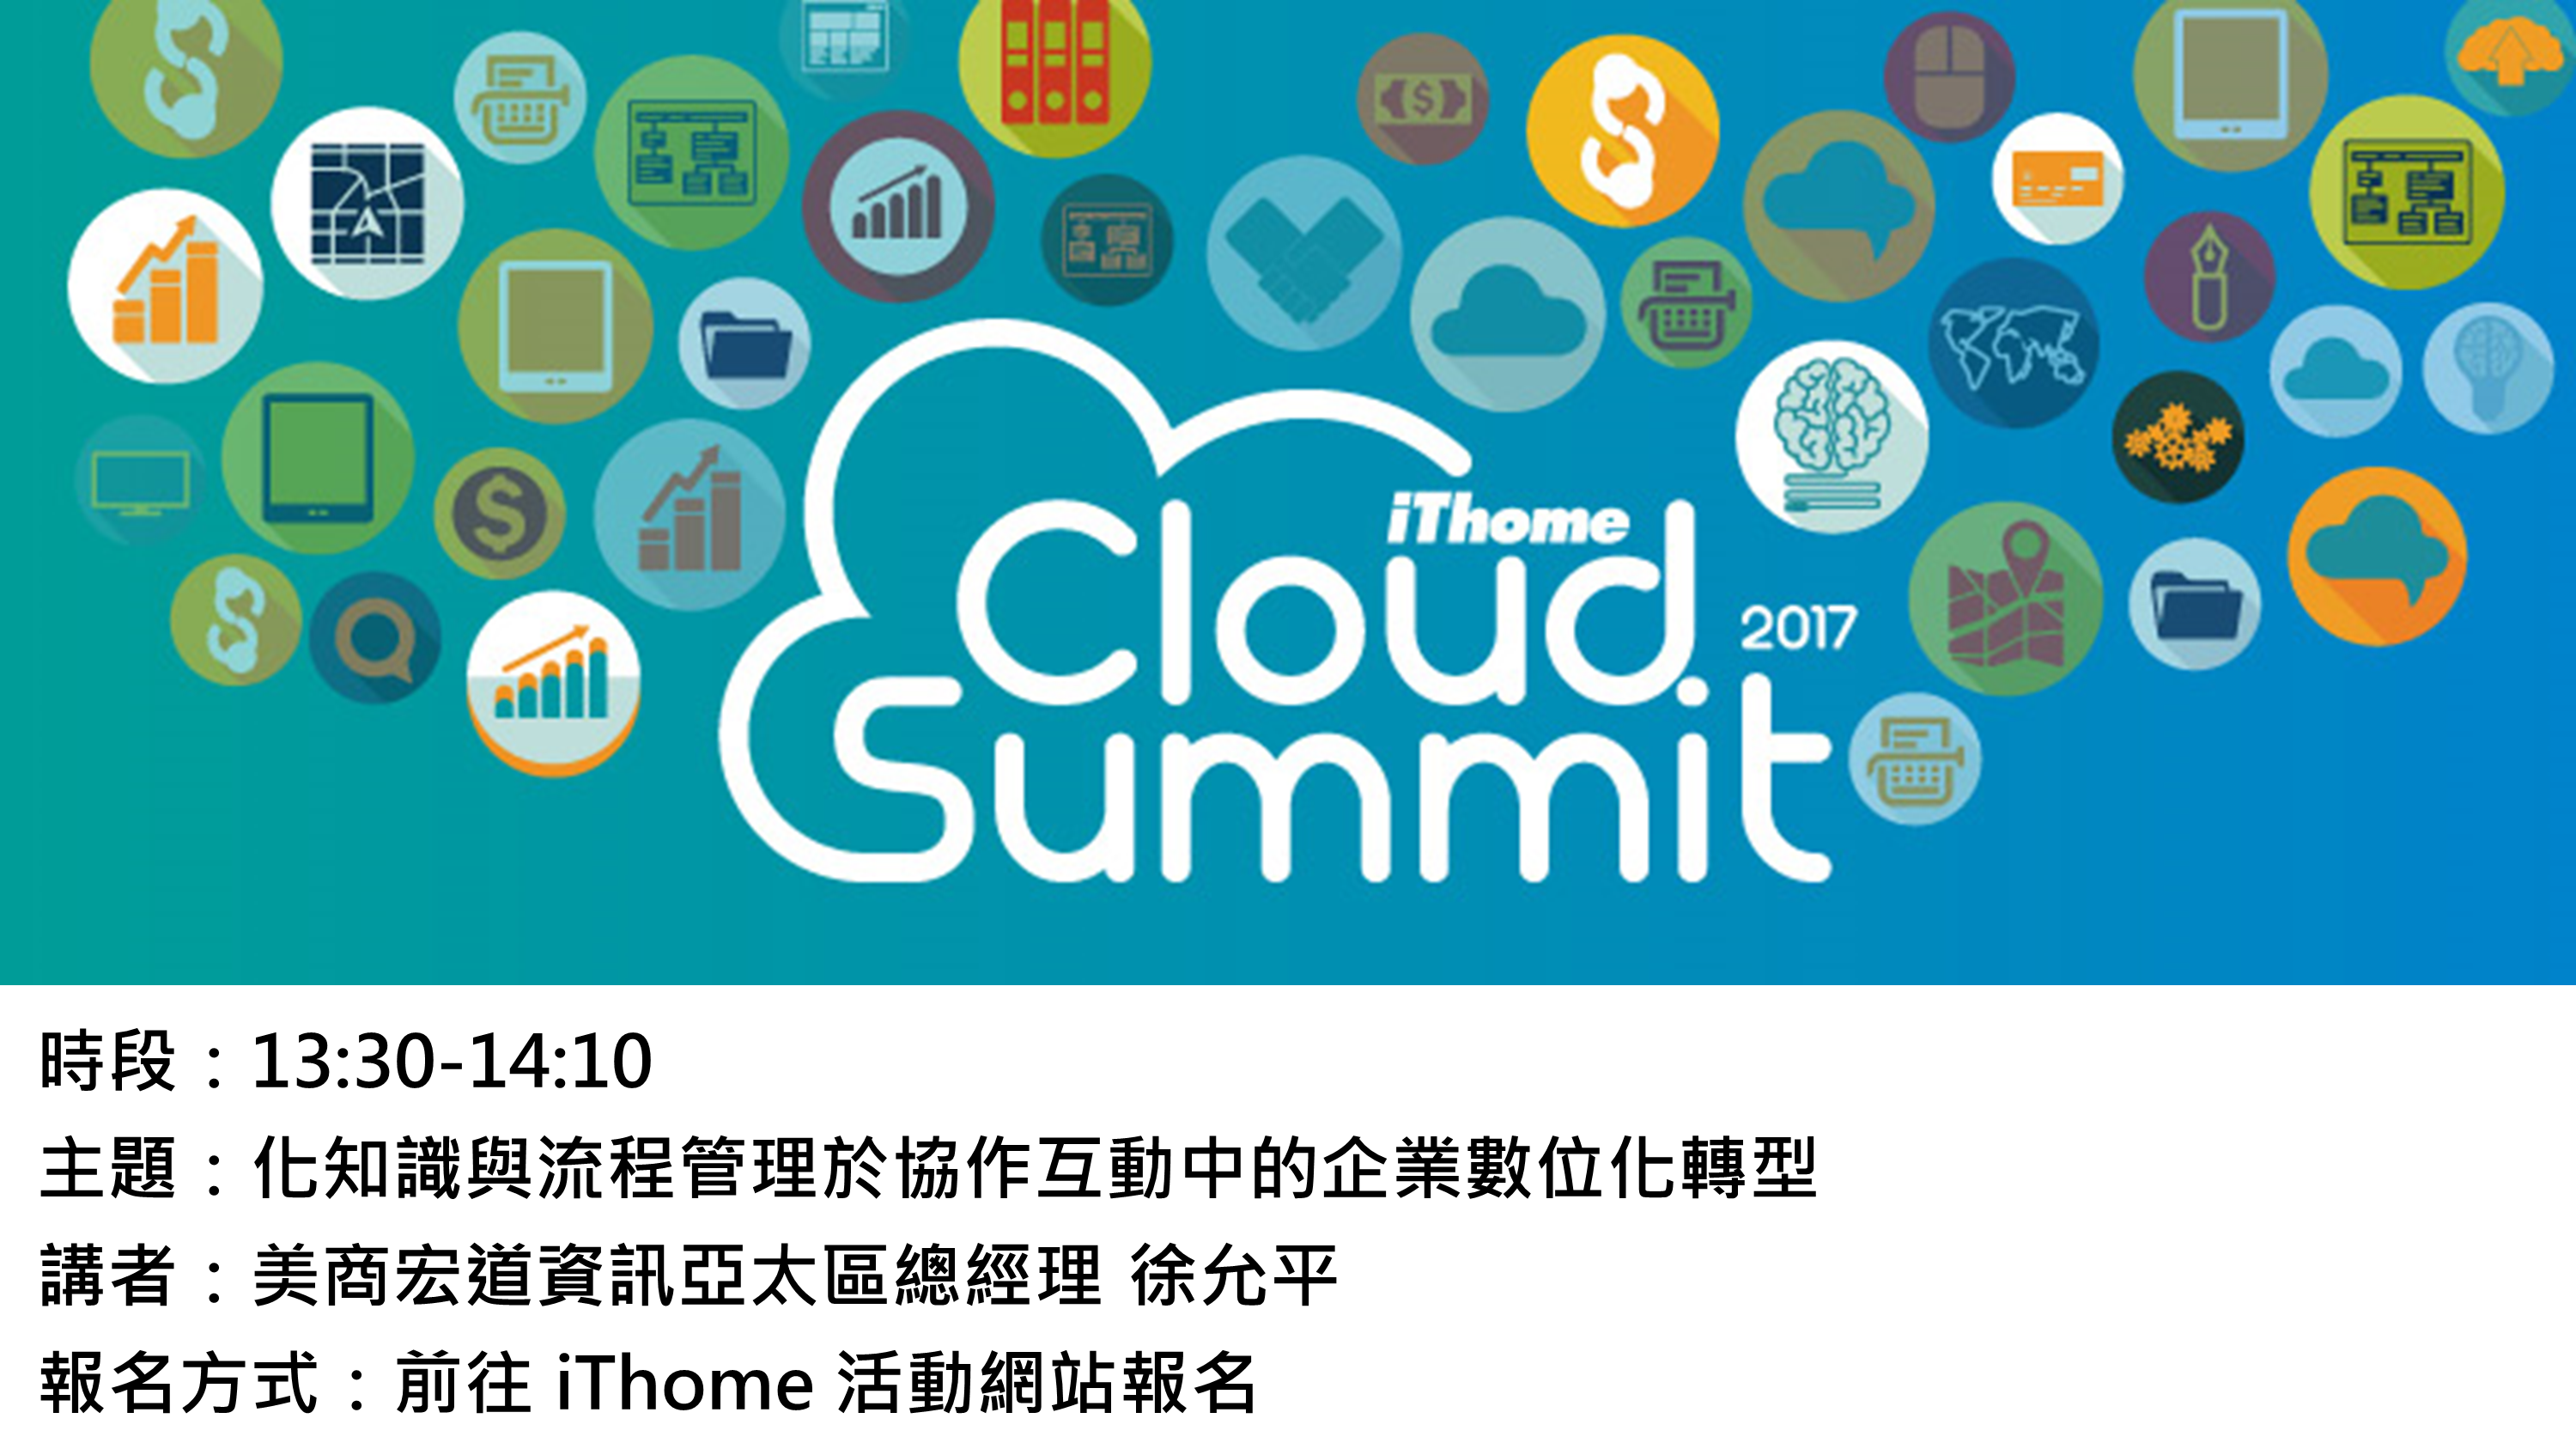 化知識與流程管理於協作互動中的企業數位轉型 － 2017 iThome Cloud Summit 議程